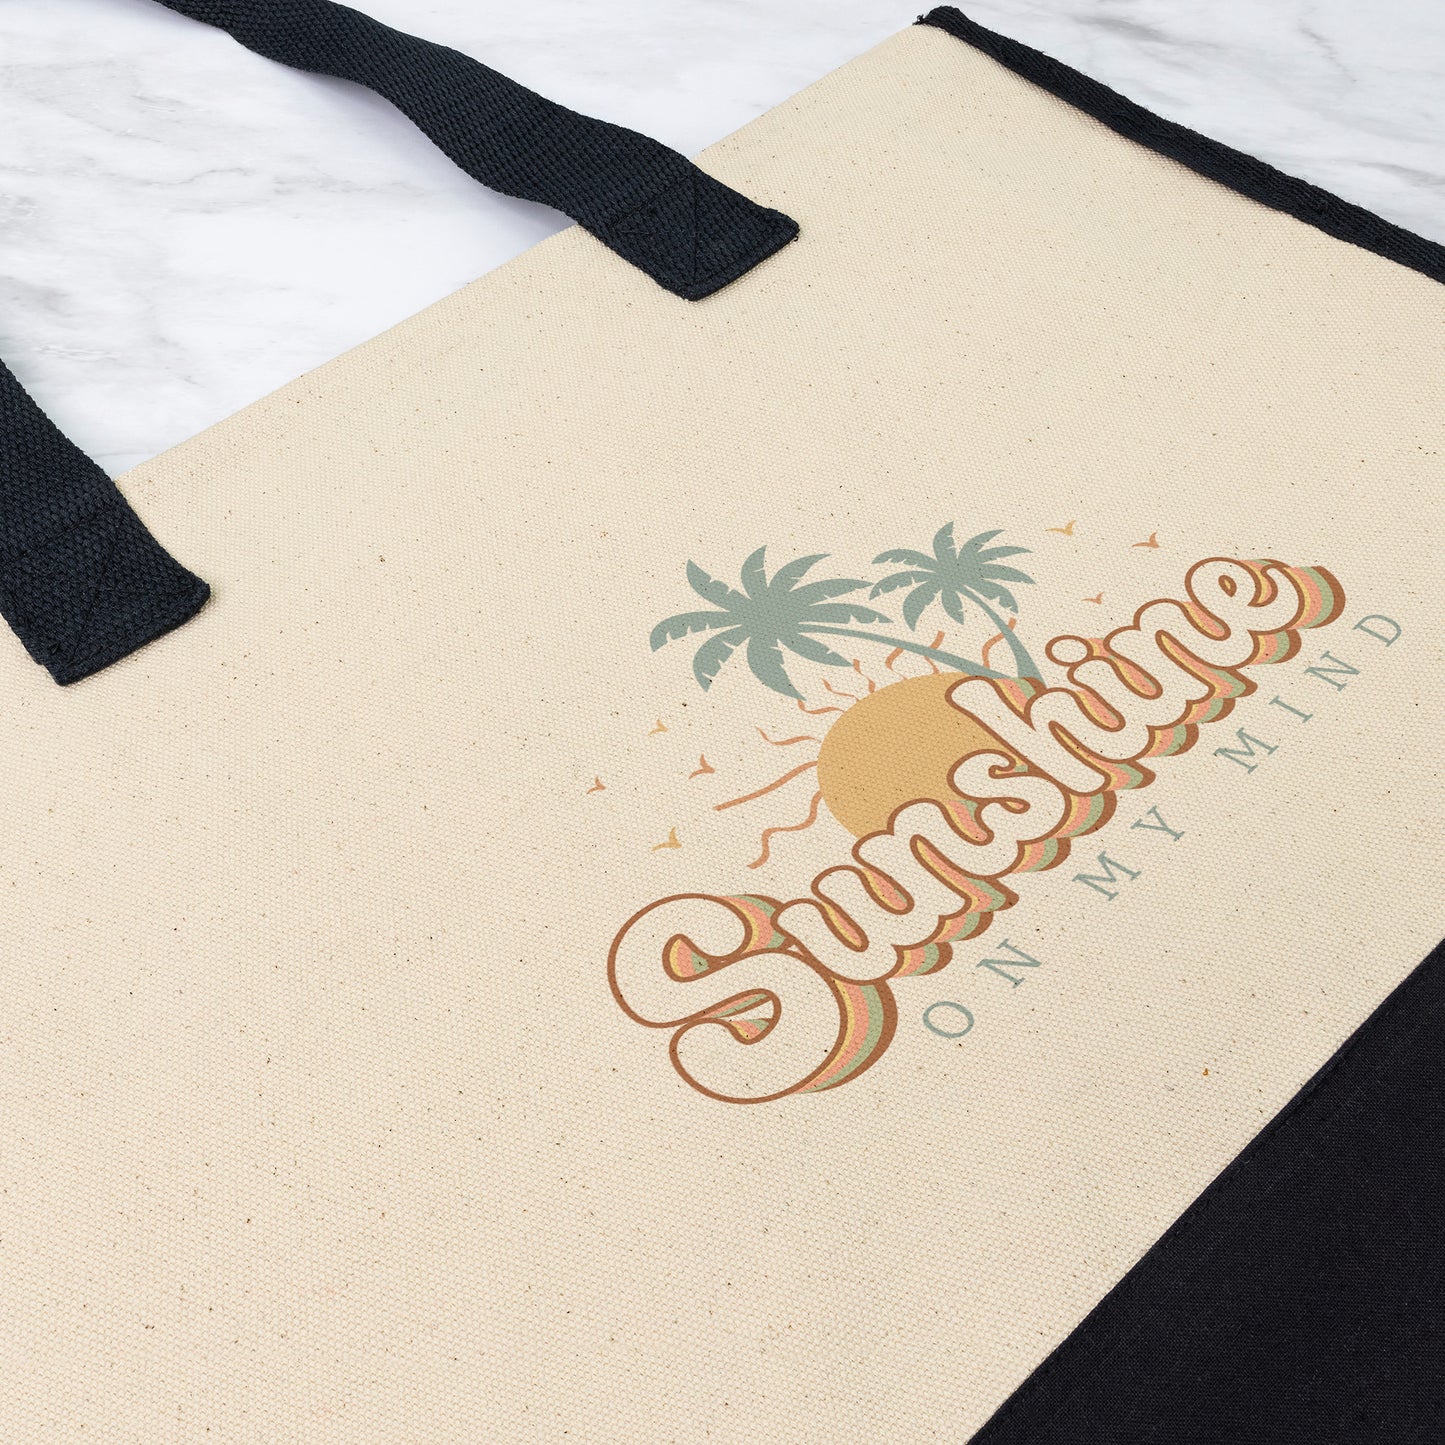 SunshineTote Bag, Premium Beach Bag, Large Cotton Weekender Bag